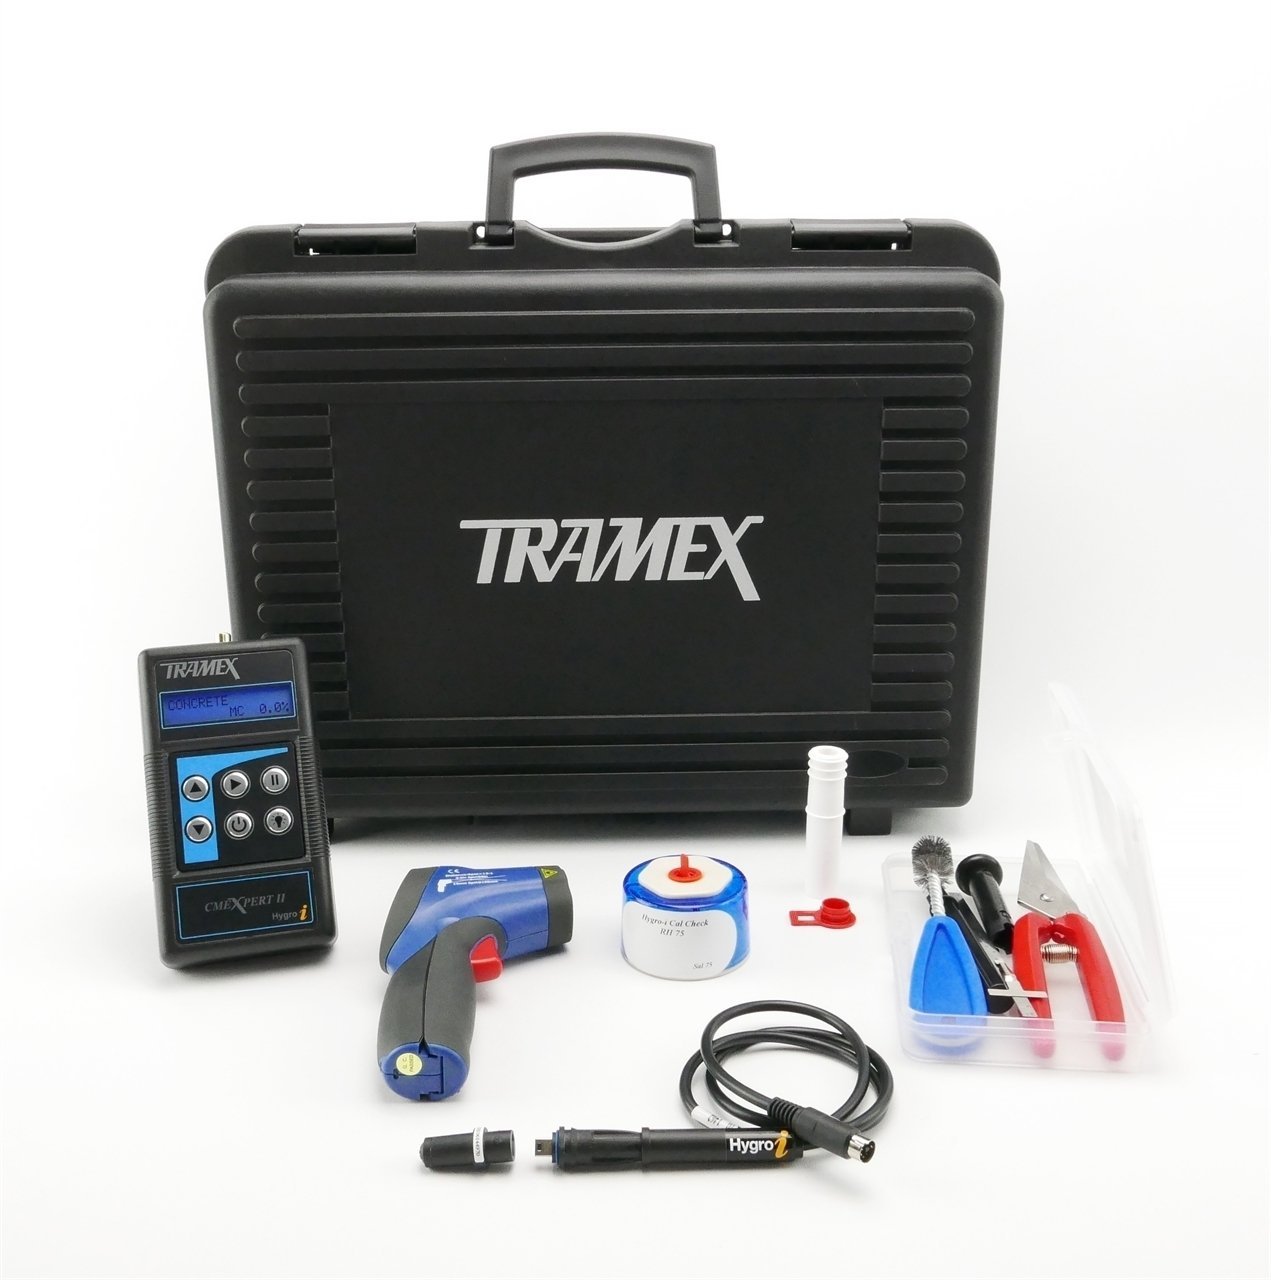 Tramex Roof Inspection Kit - MIZA